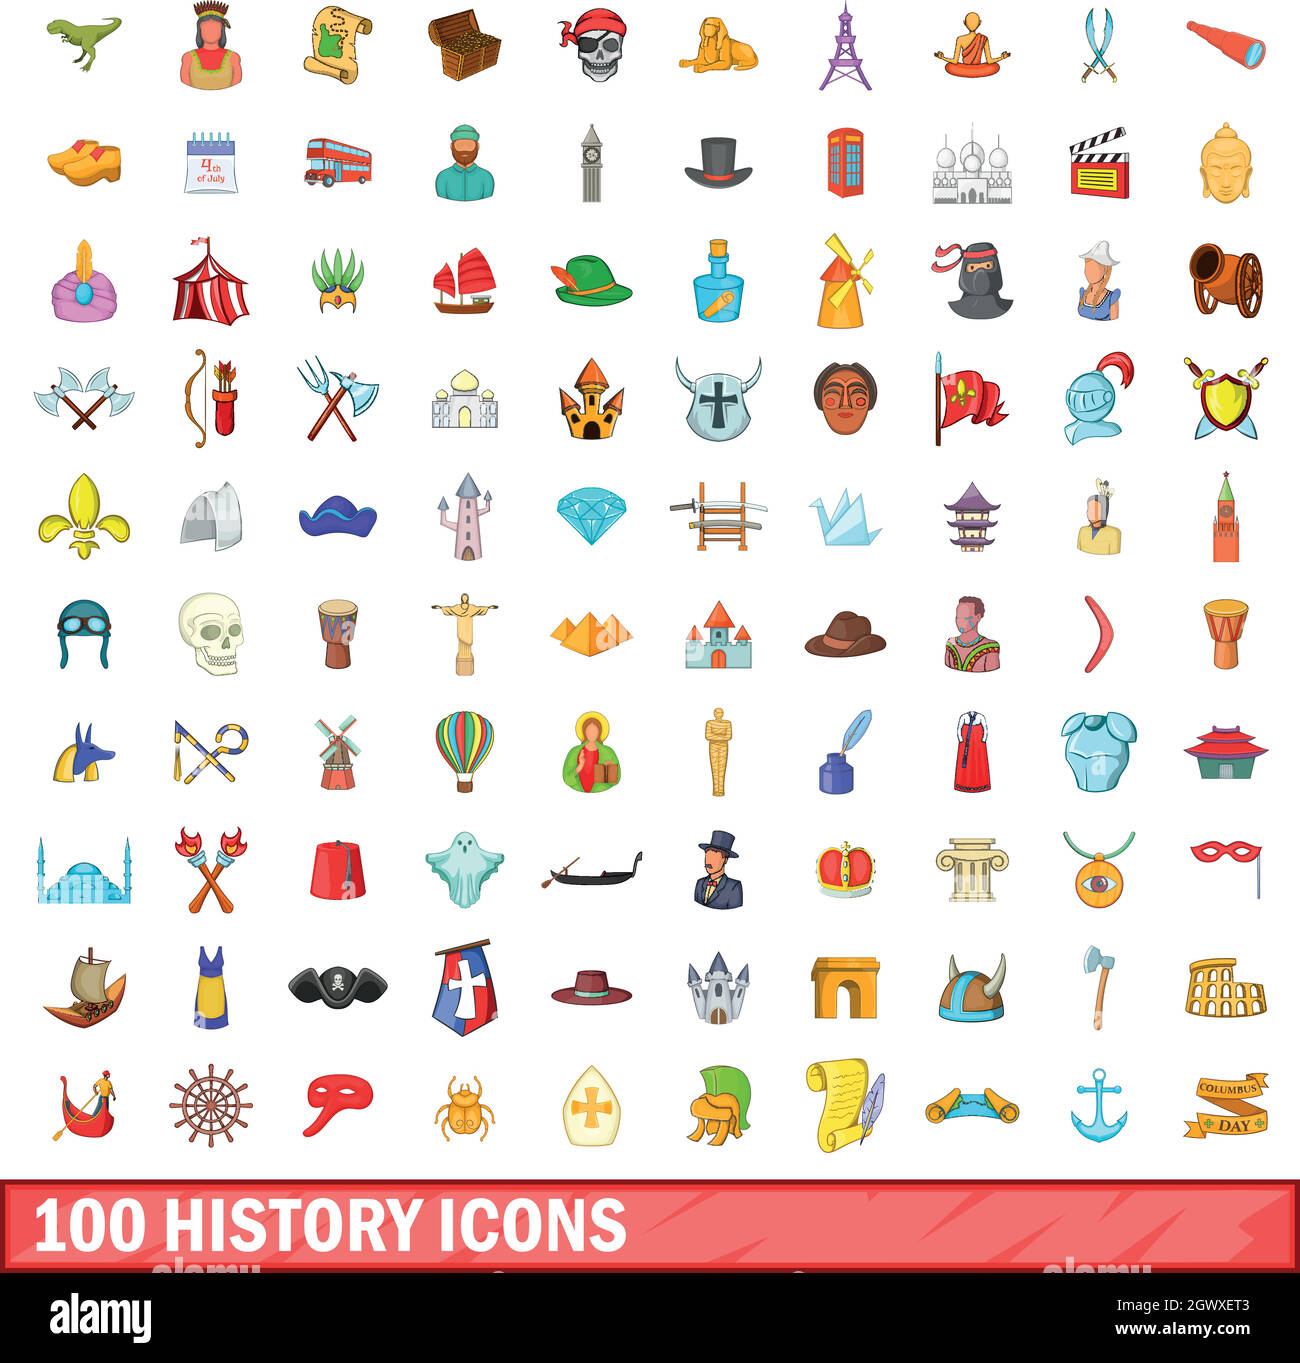 100 storia set di icone, stile cartoon Illustrazione Vettoriale